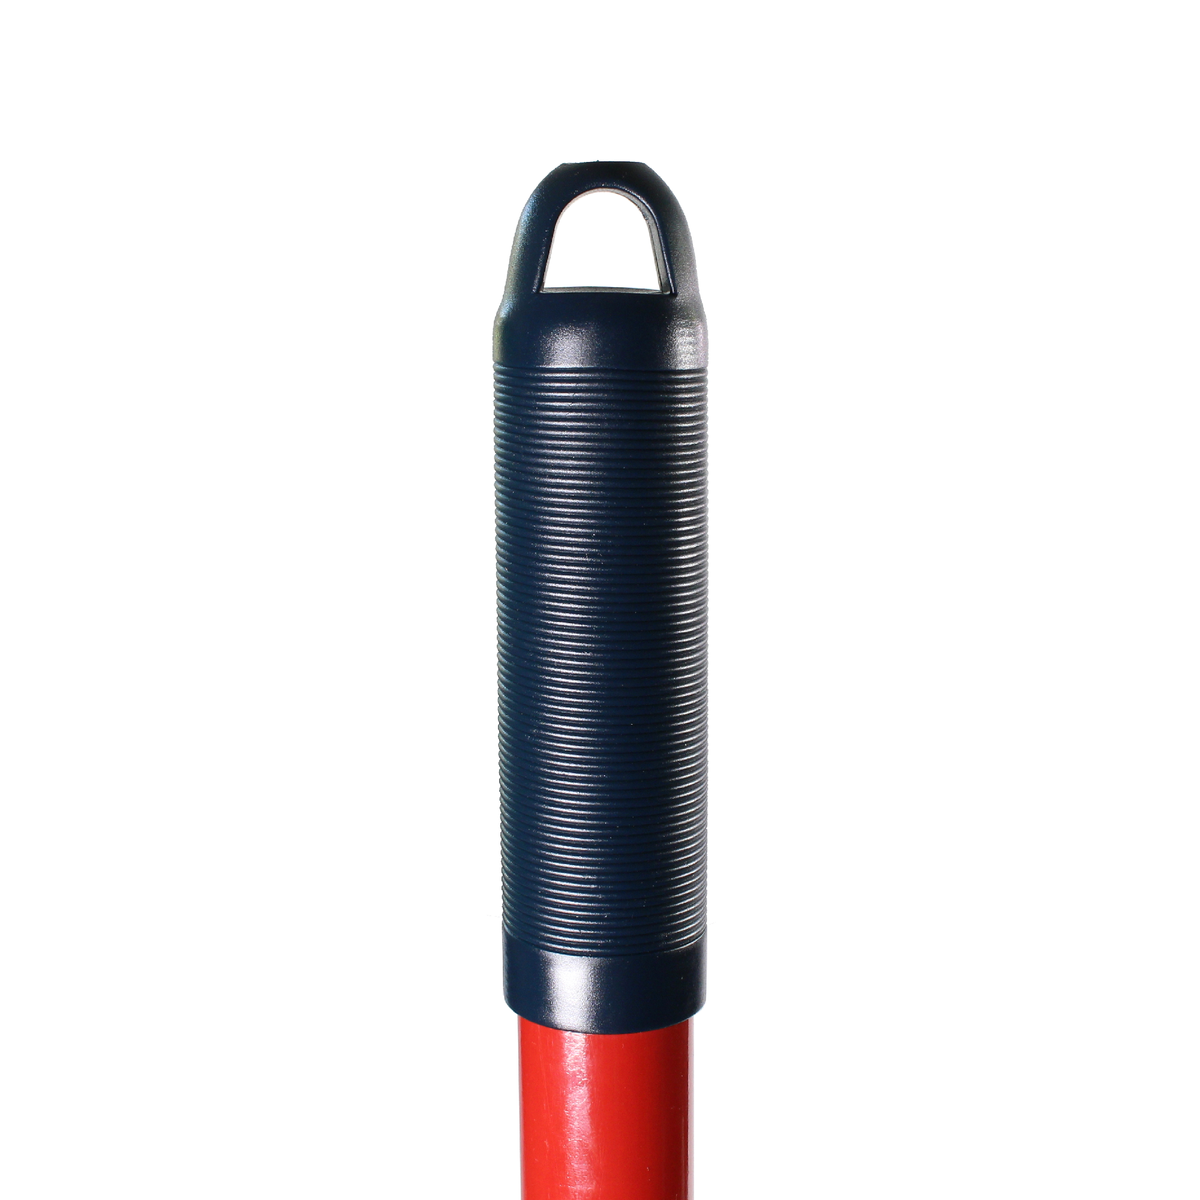 HAUSHALT Lüfterrechen LR002 H, 150 cm, Glasfaserstiel in rot, mit gummierten ergonomischen und rutschfesten Griff in blau ( 000051310966 ) - Toolbrothers